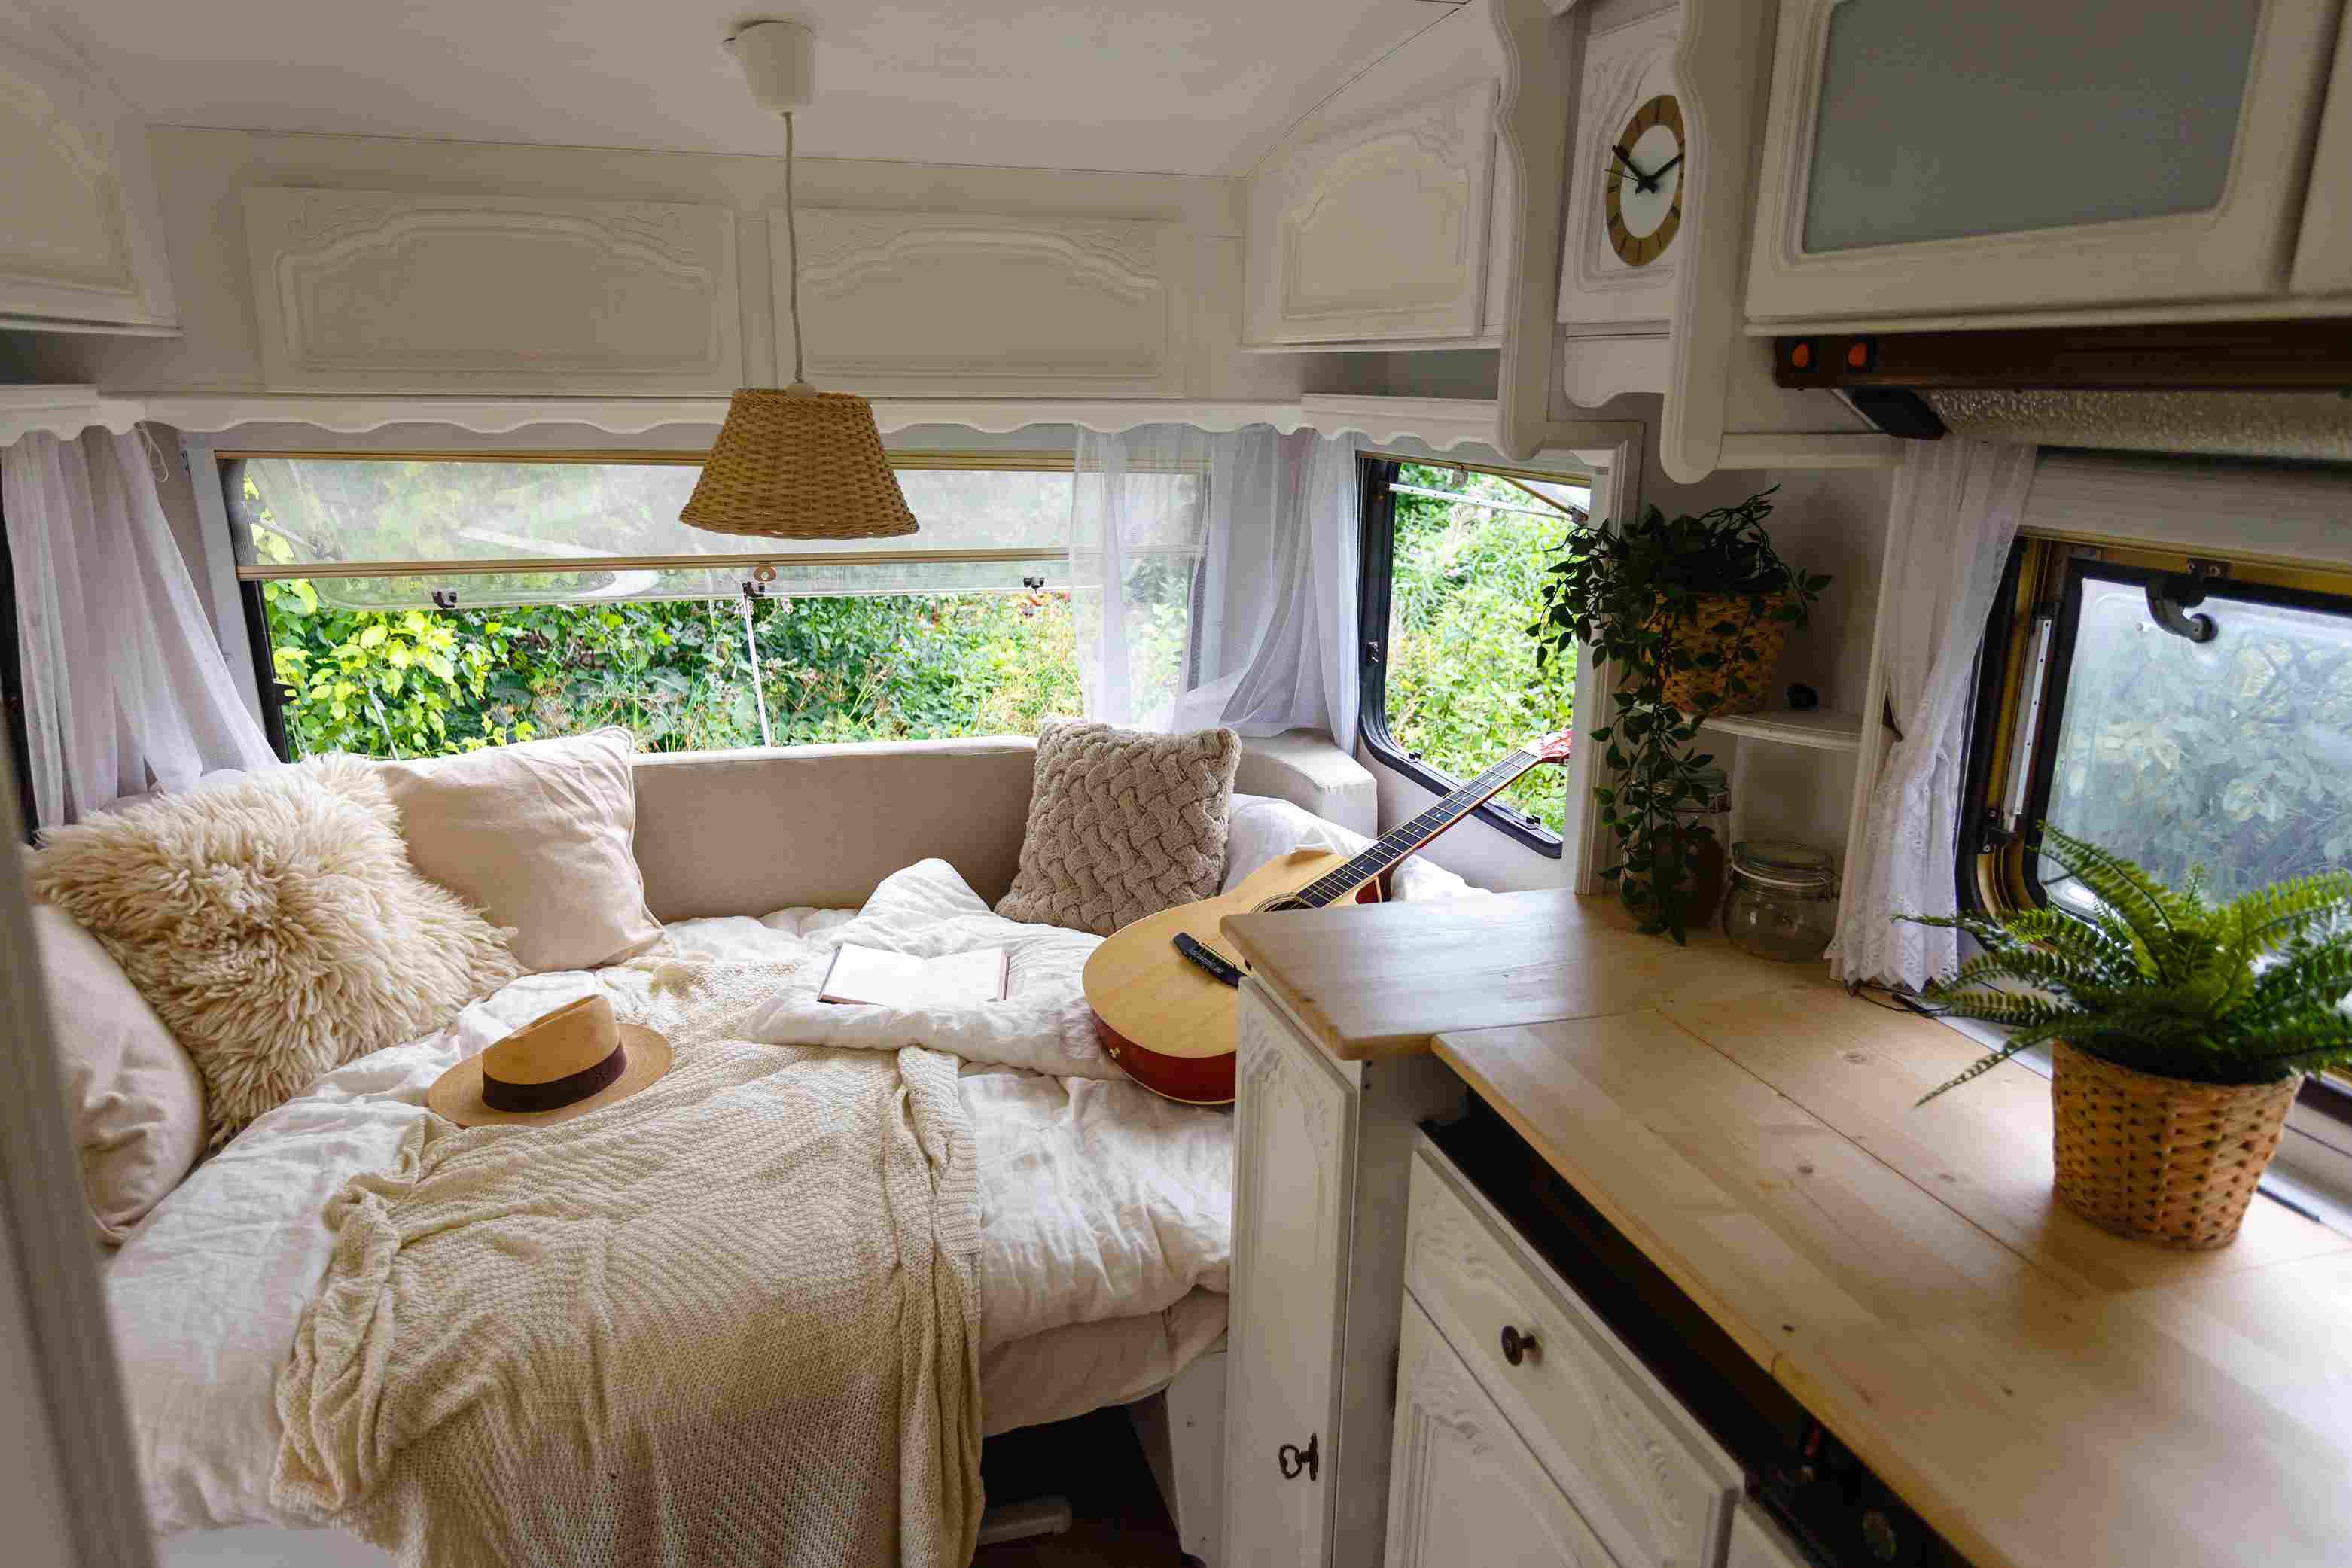 Wnętrze przyczepy kempingowej: biała drewniana boazeria, jasne poduszki i wełniane koce